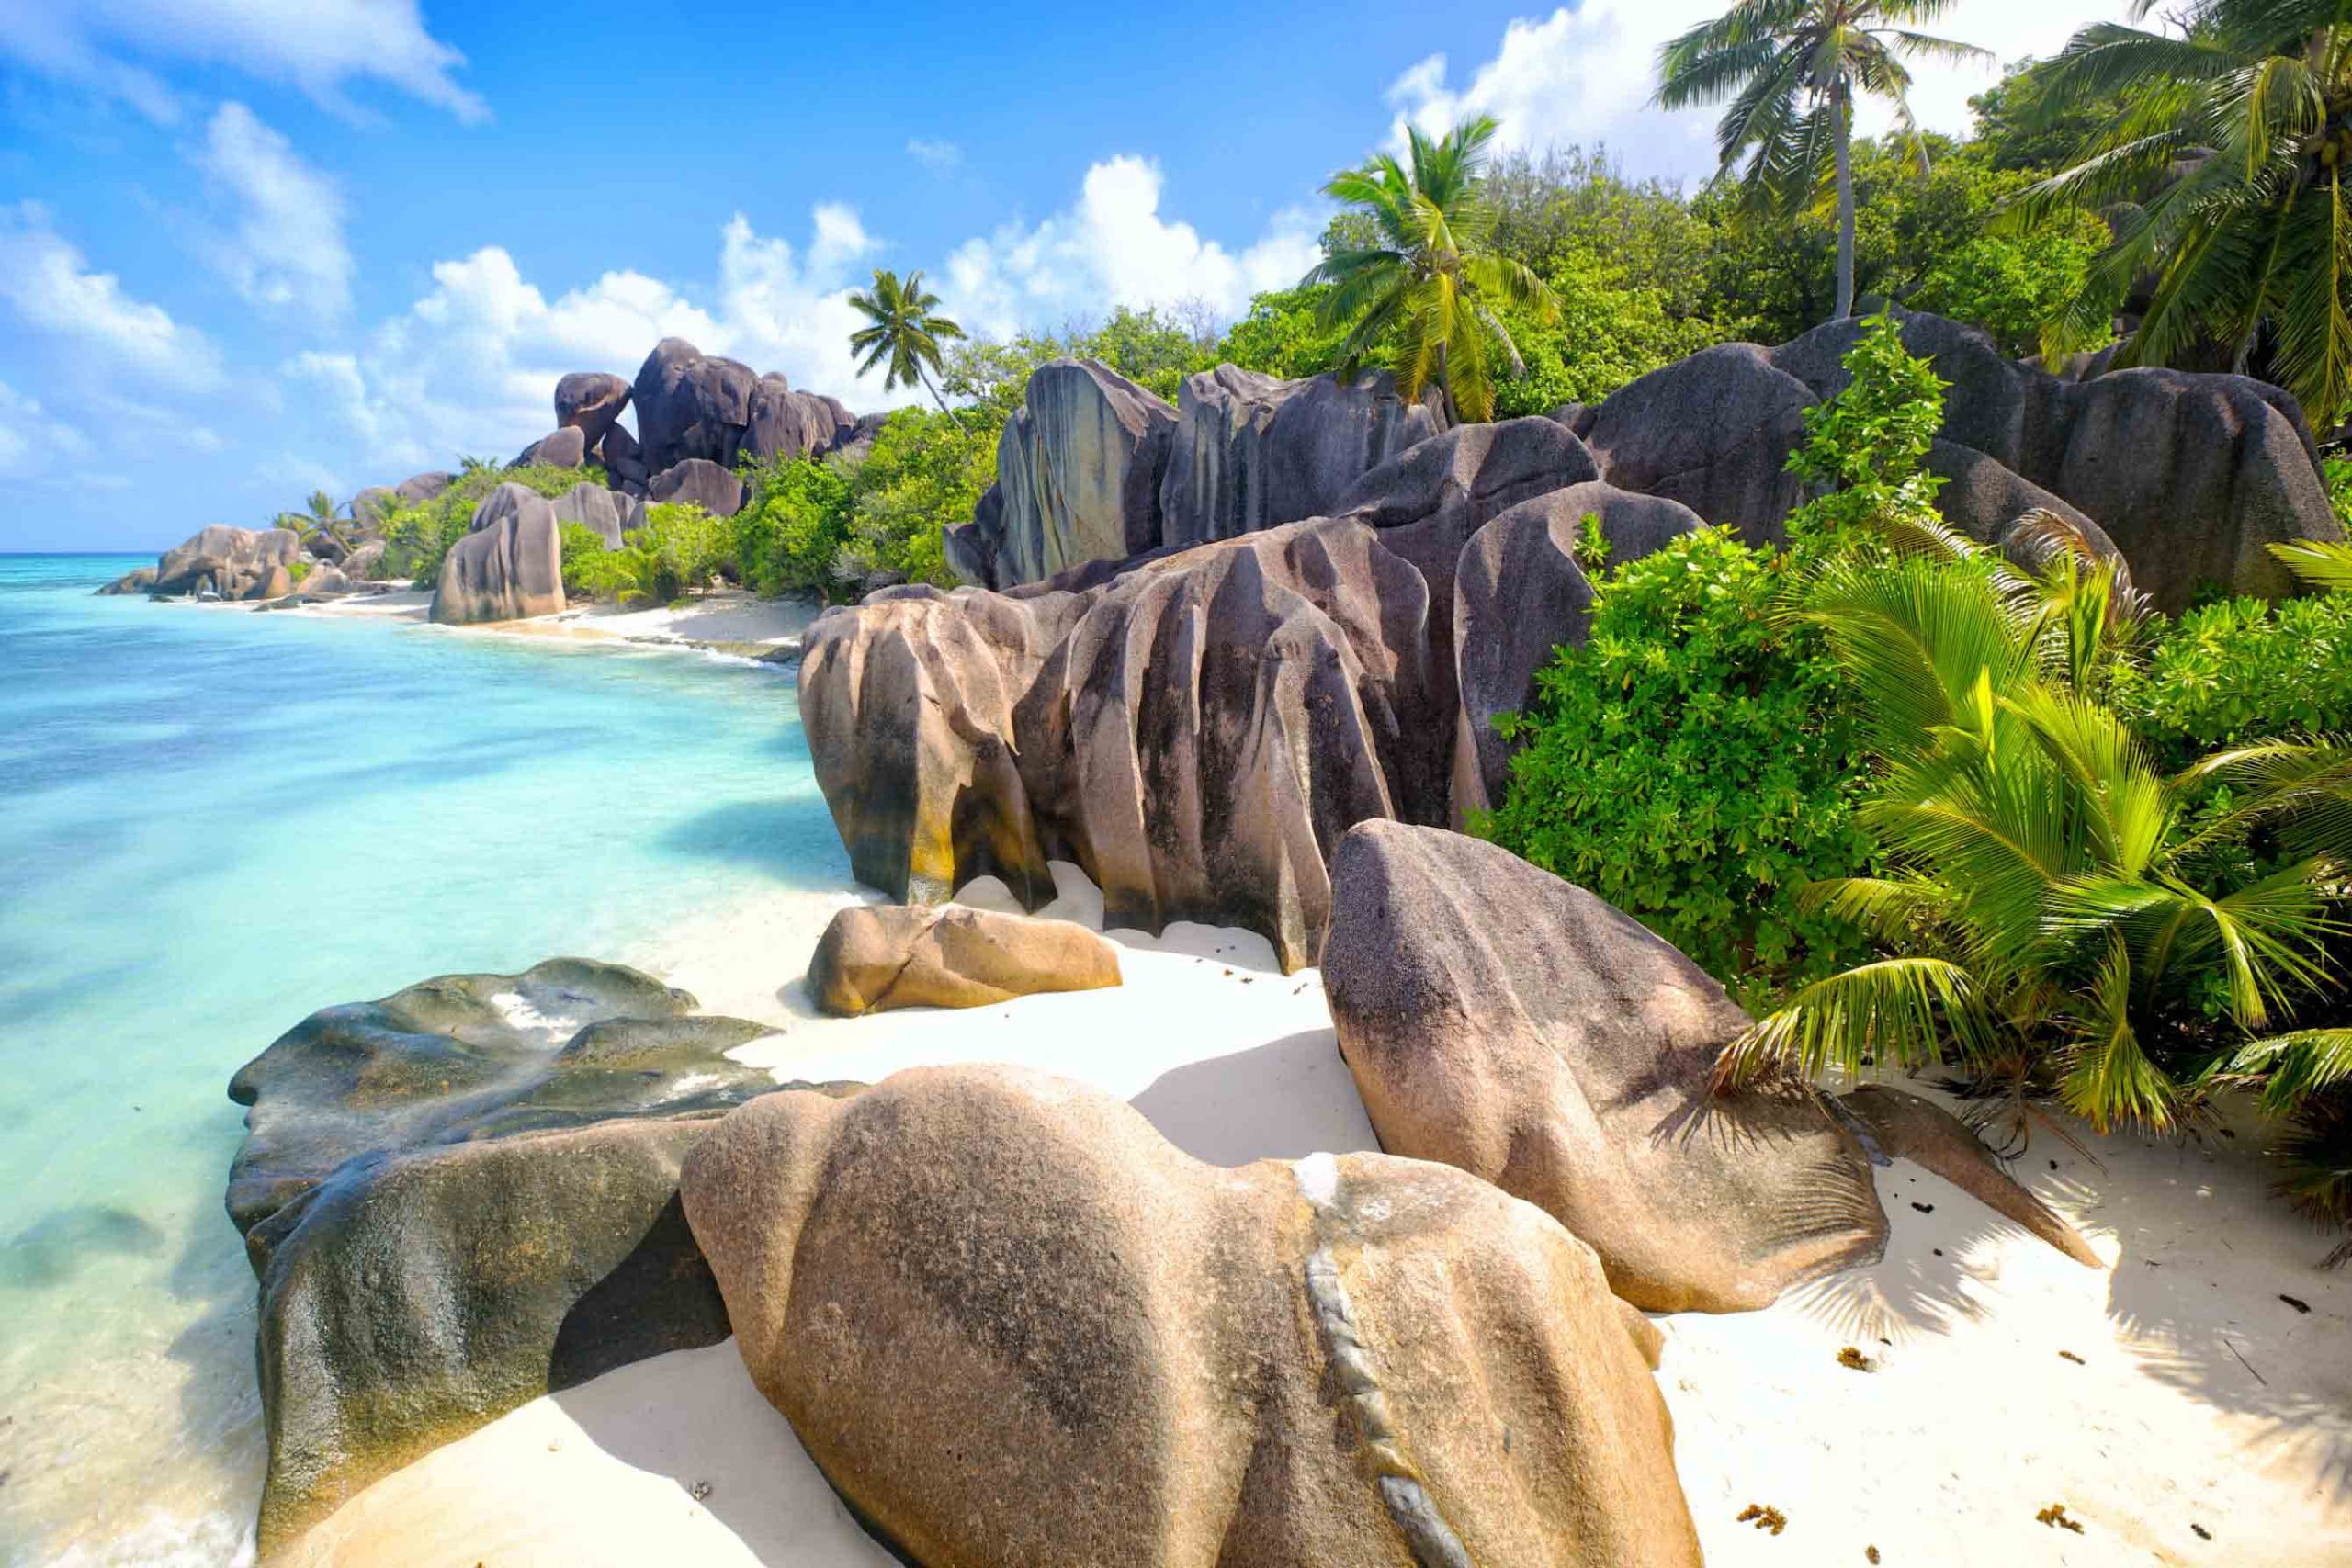 Tạp chí Tây Ban Nha bình chọn Palawan của Philippines là ‘đảo đẹp nhất thế giới’